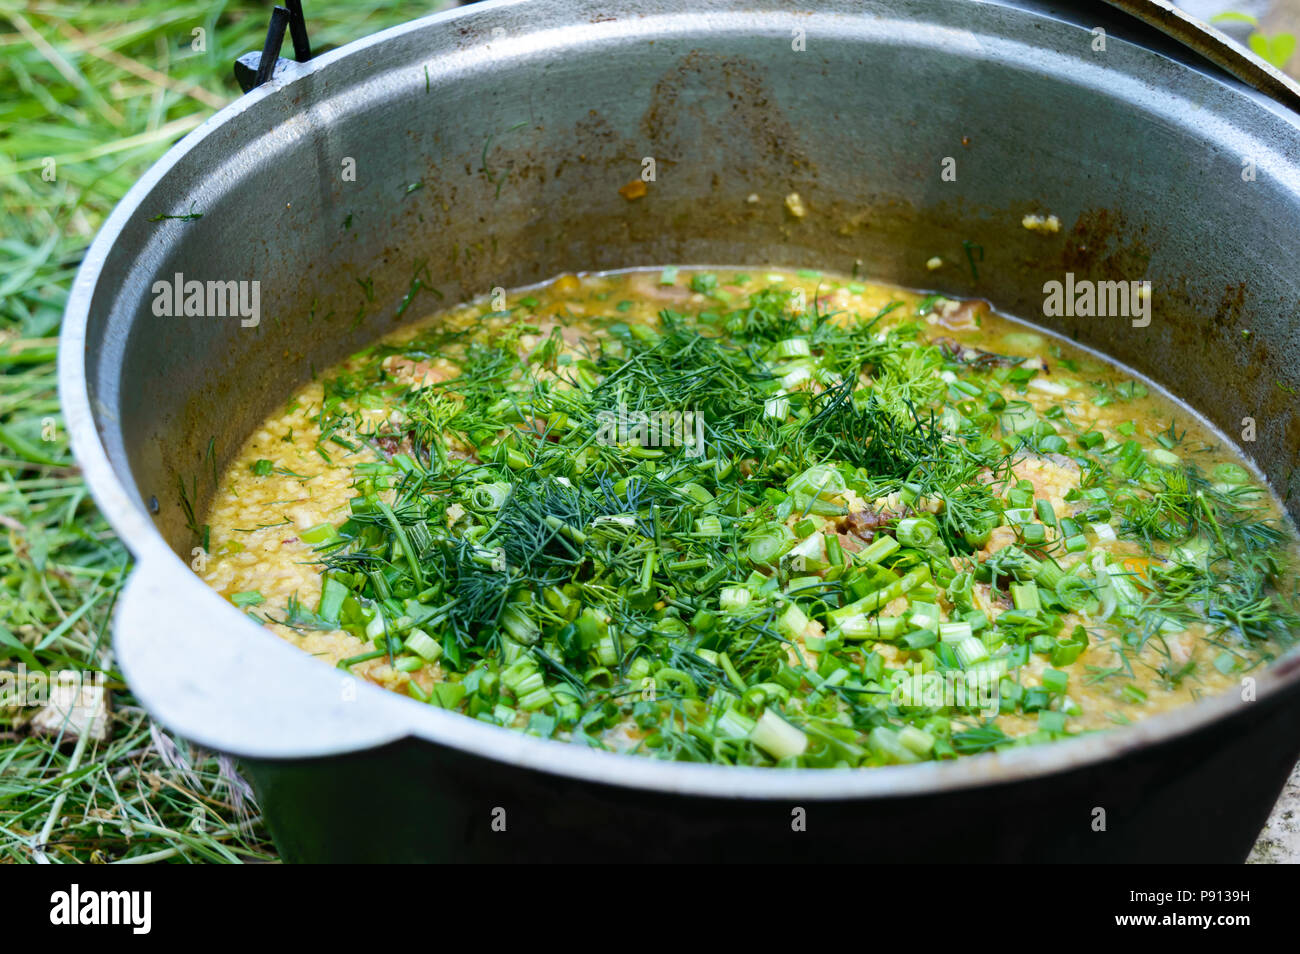 Lecker brei Couscous mit Fleisch, Gemüse und frische Kräuter in einem Topf  kochen auf die Natur. Nahaufnahme Stockfotografie - Alamy